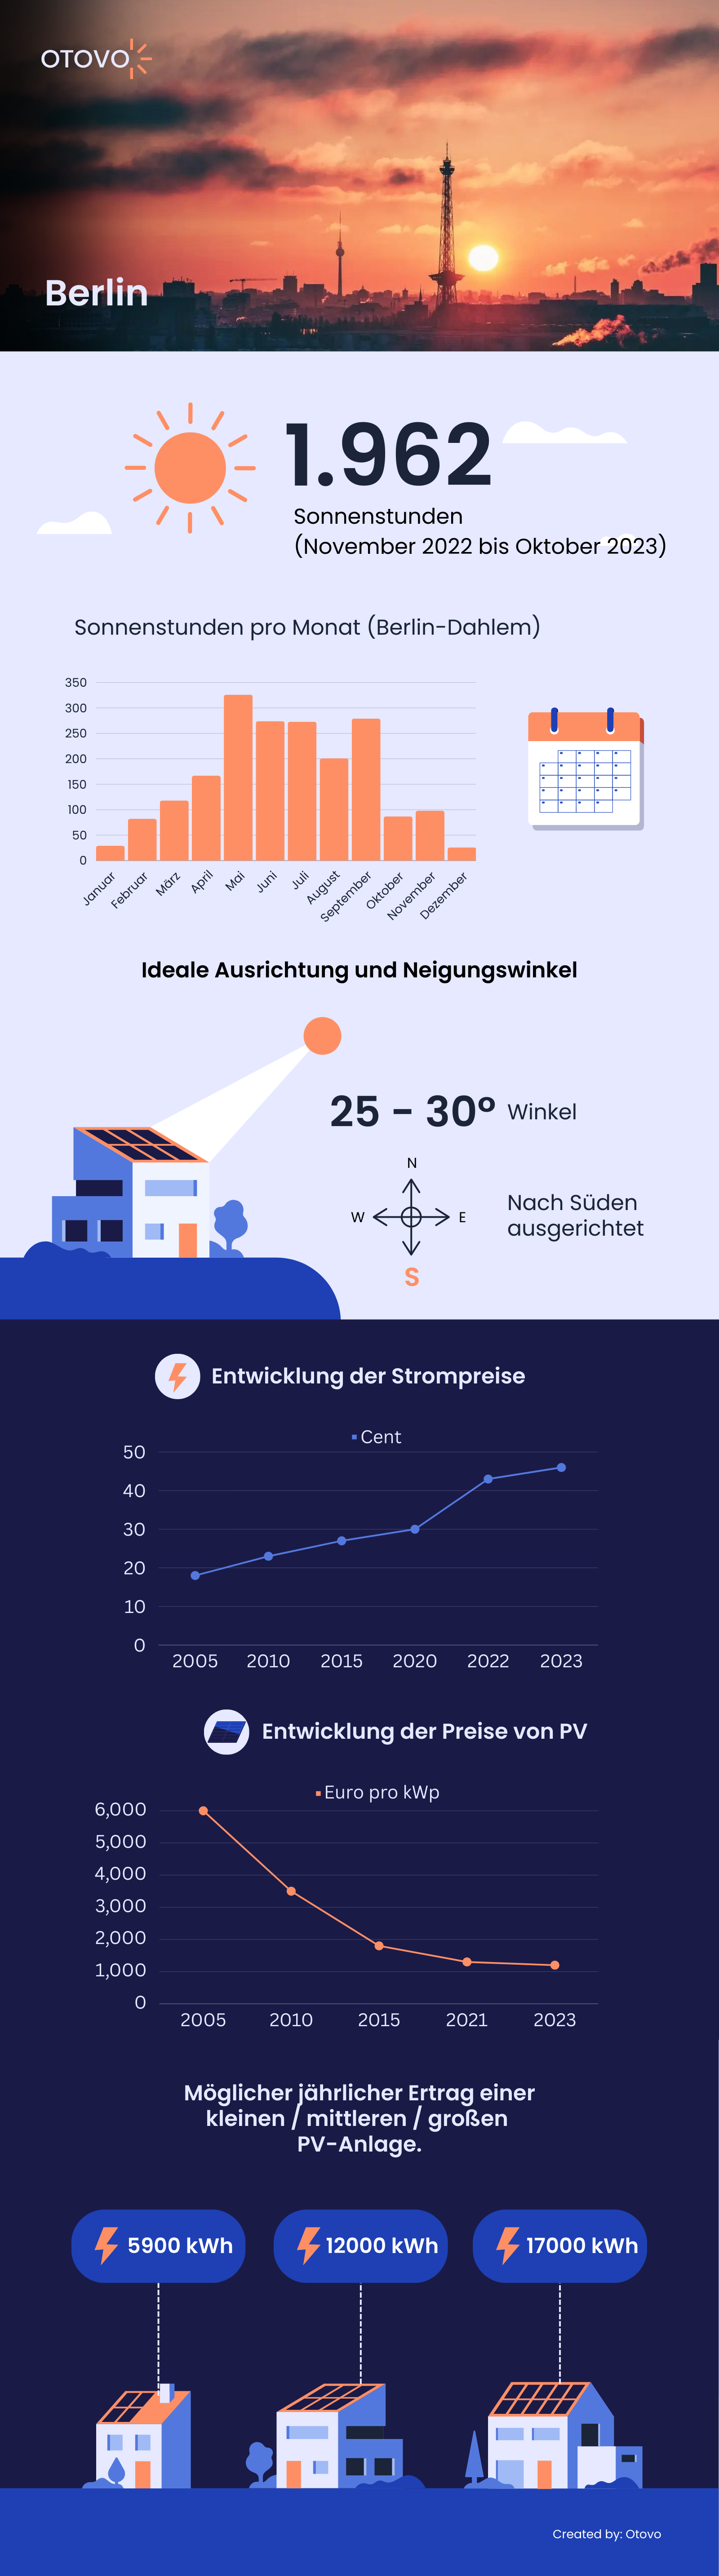 Infografik zu Solaranlagen in Berlin